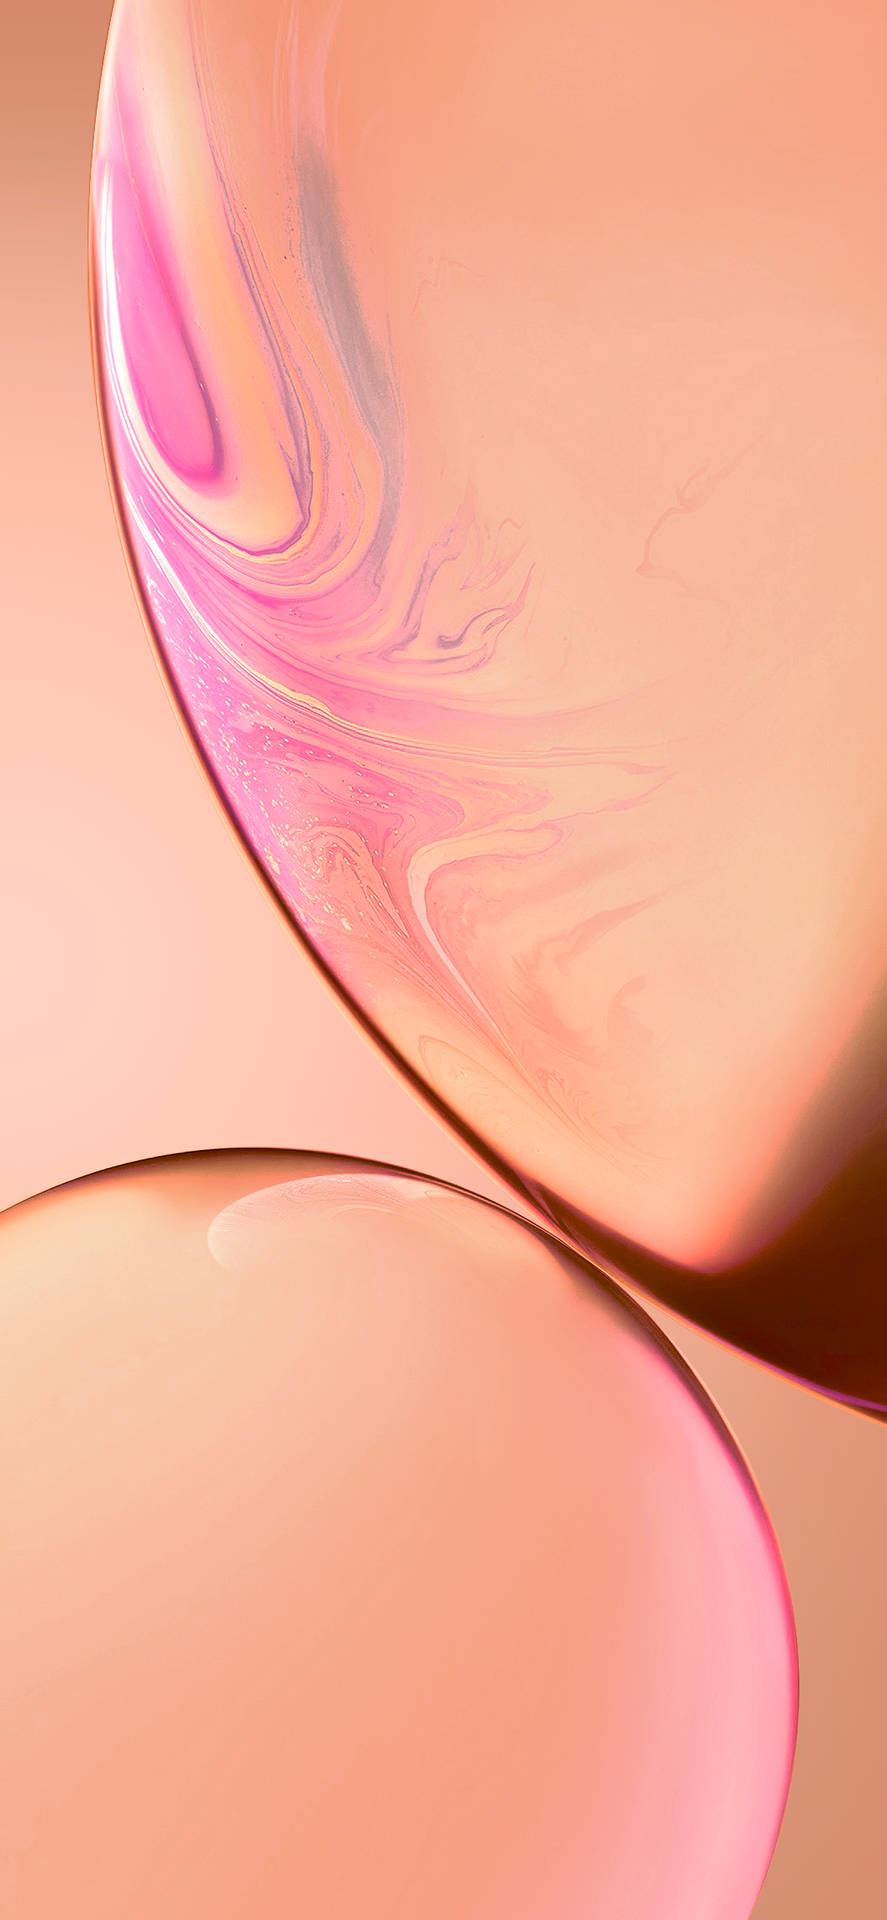 Lassensie Ihre Persönlichkeit Mit Dem Lebendigen Pink Des Iphone Xr Strahlen. Wallpaper